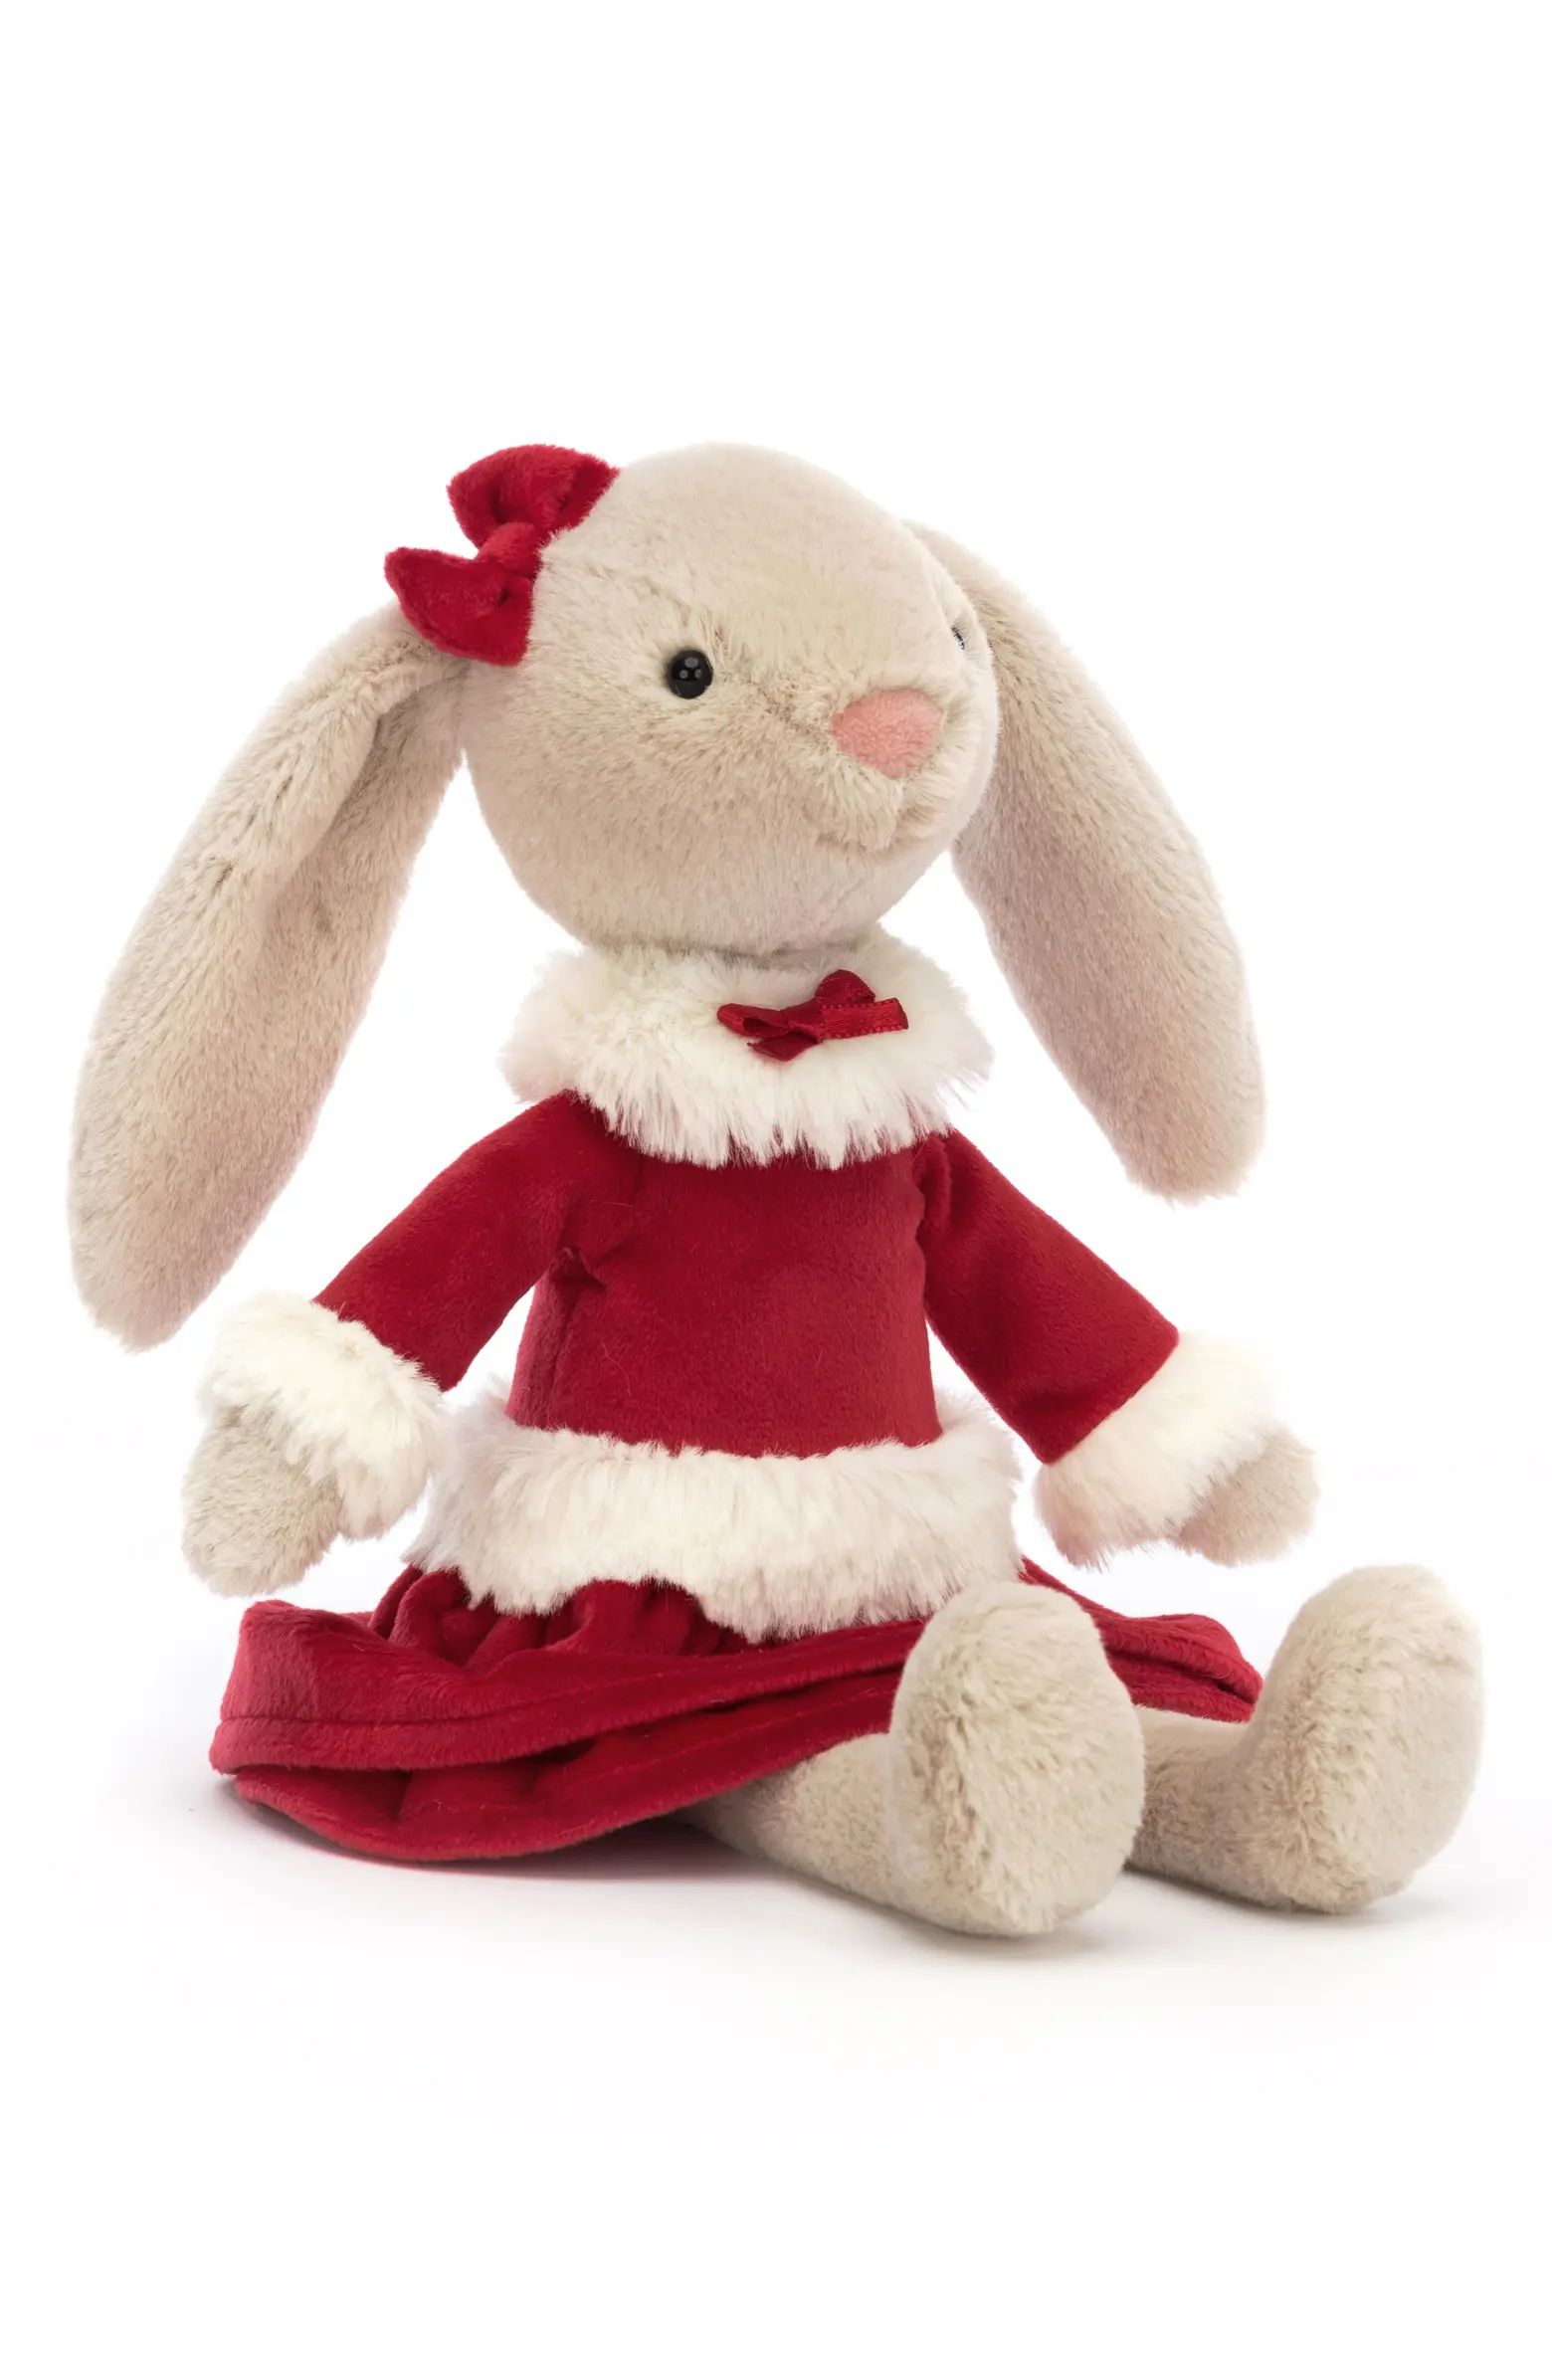 Lottie Festive Bunny Stuffed Animal | Nordstrom